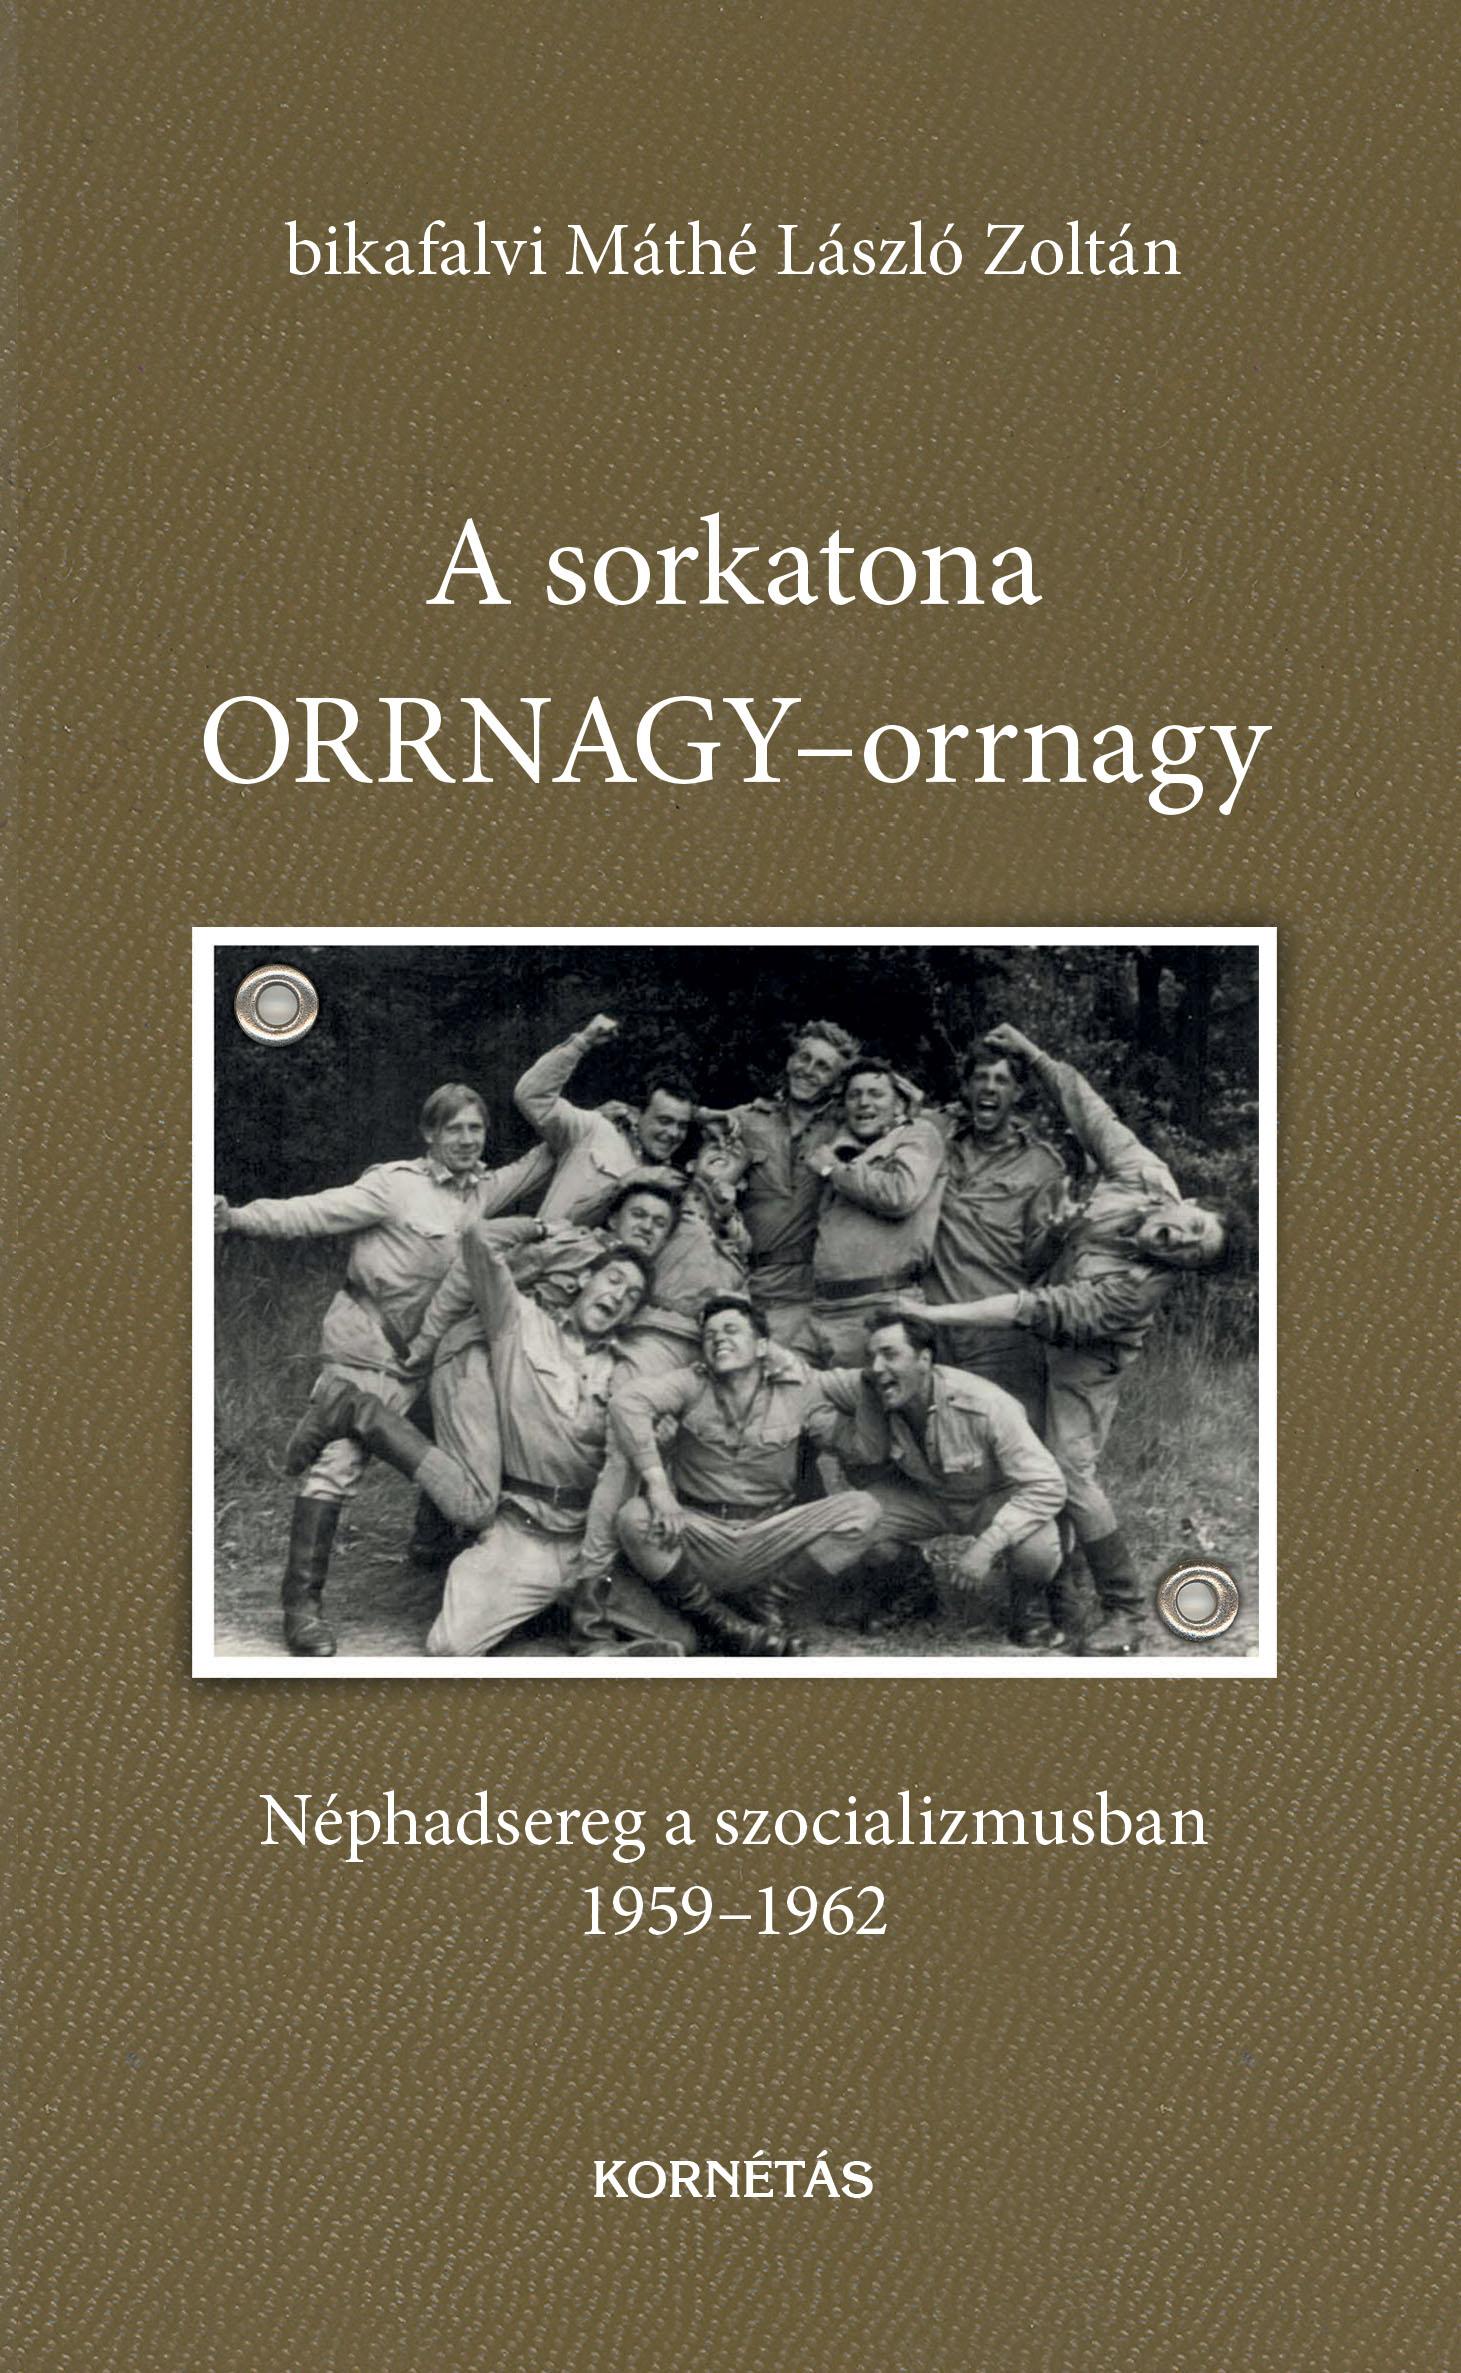 bikafalvi MÁTHÉ László Zoltán - A sorkatona ORRNAGY-orrnagy - Néphadsereg a szocializmusban 1959-1962